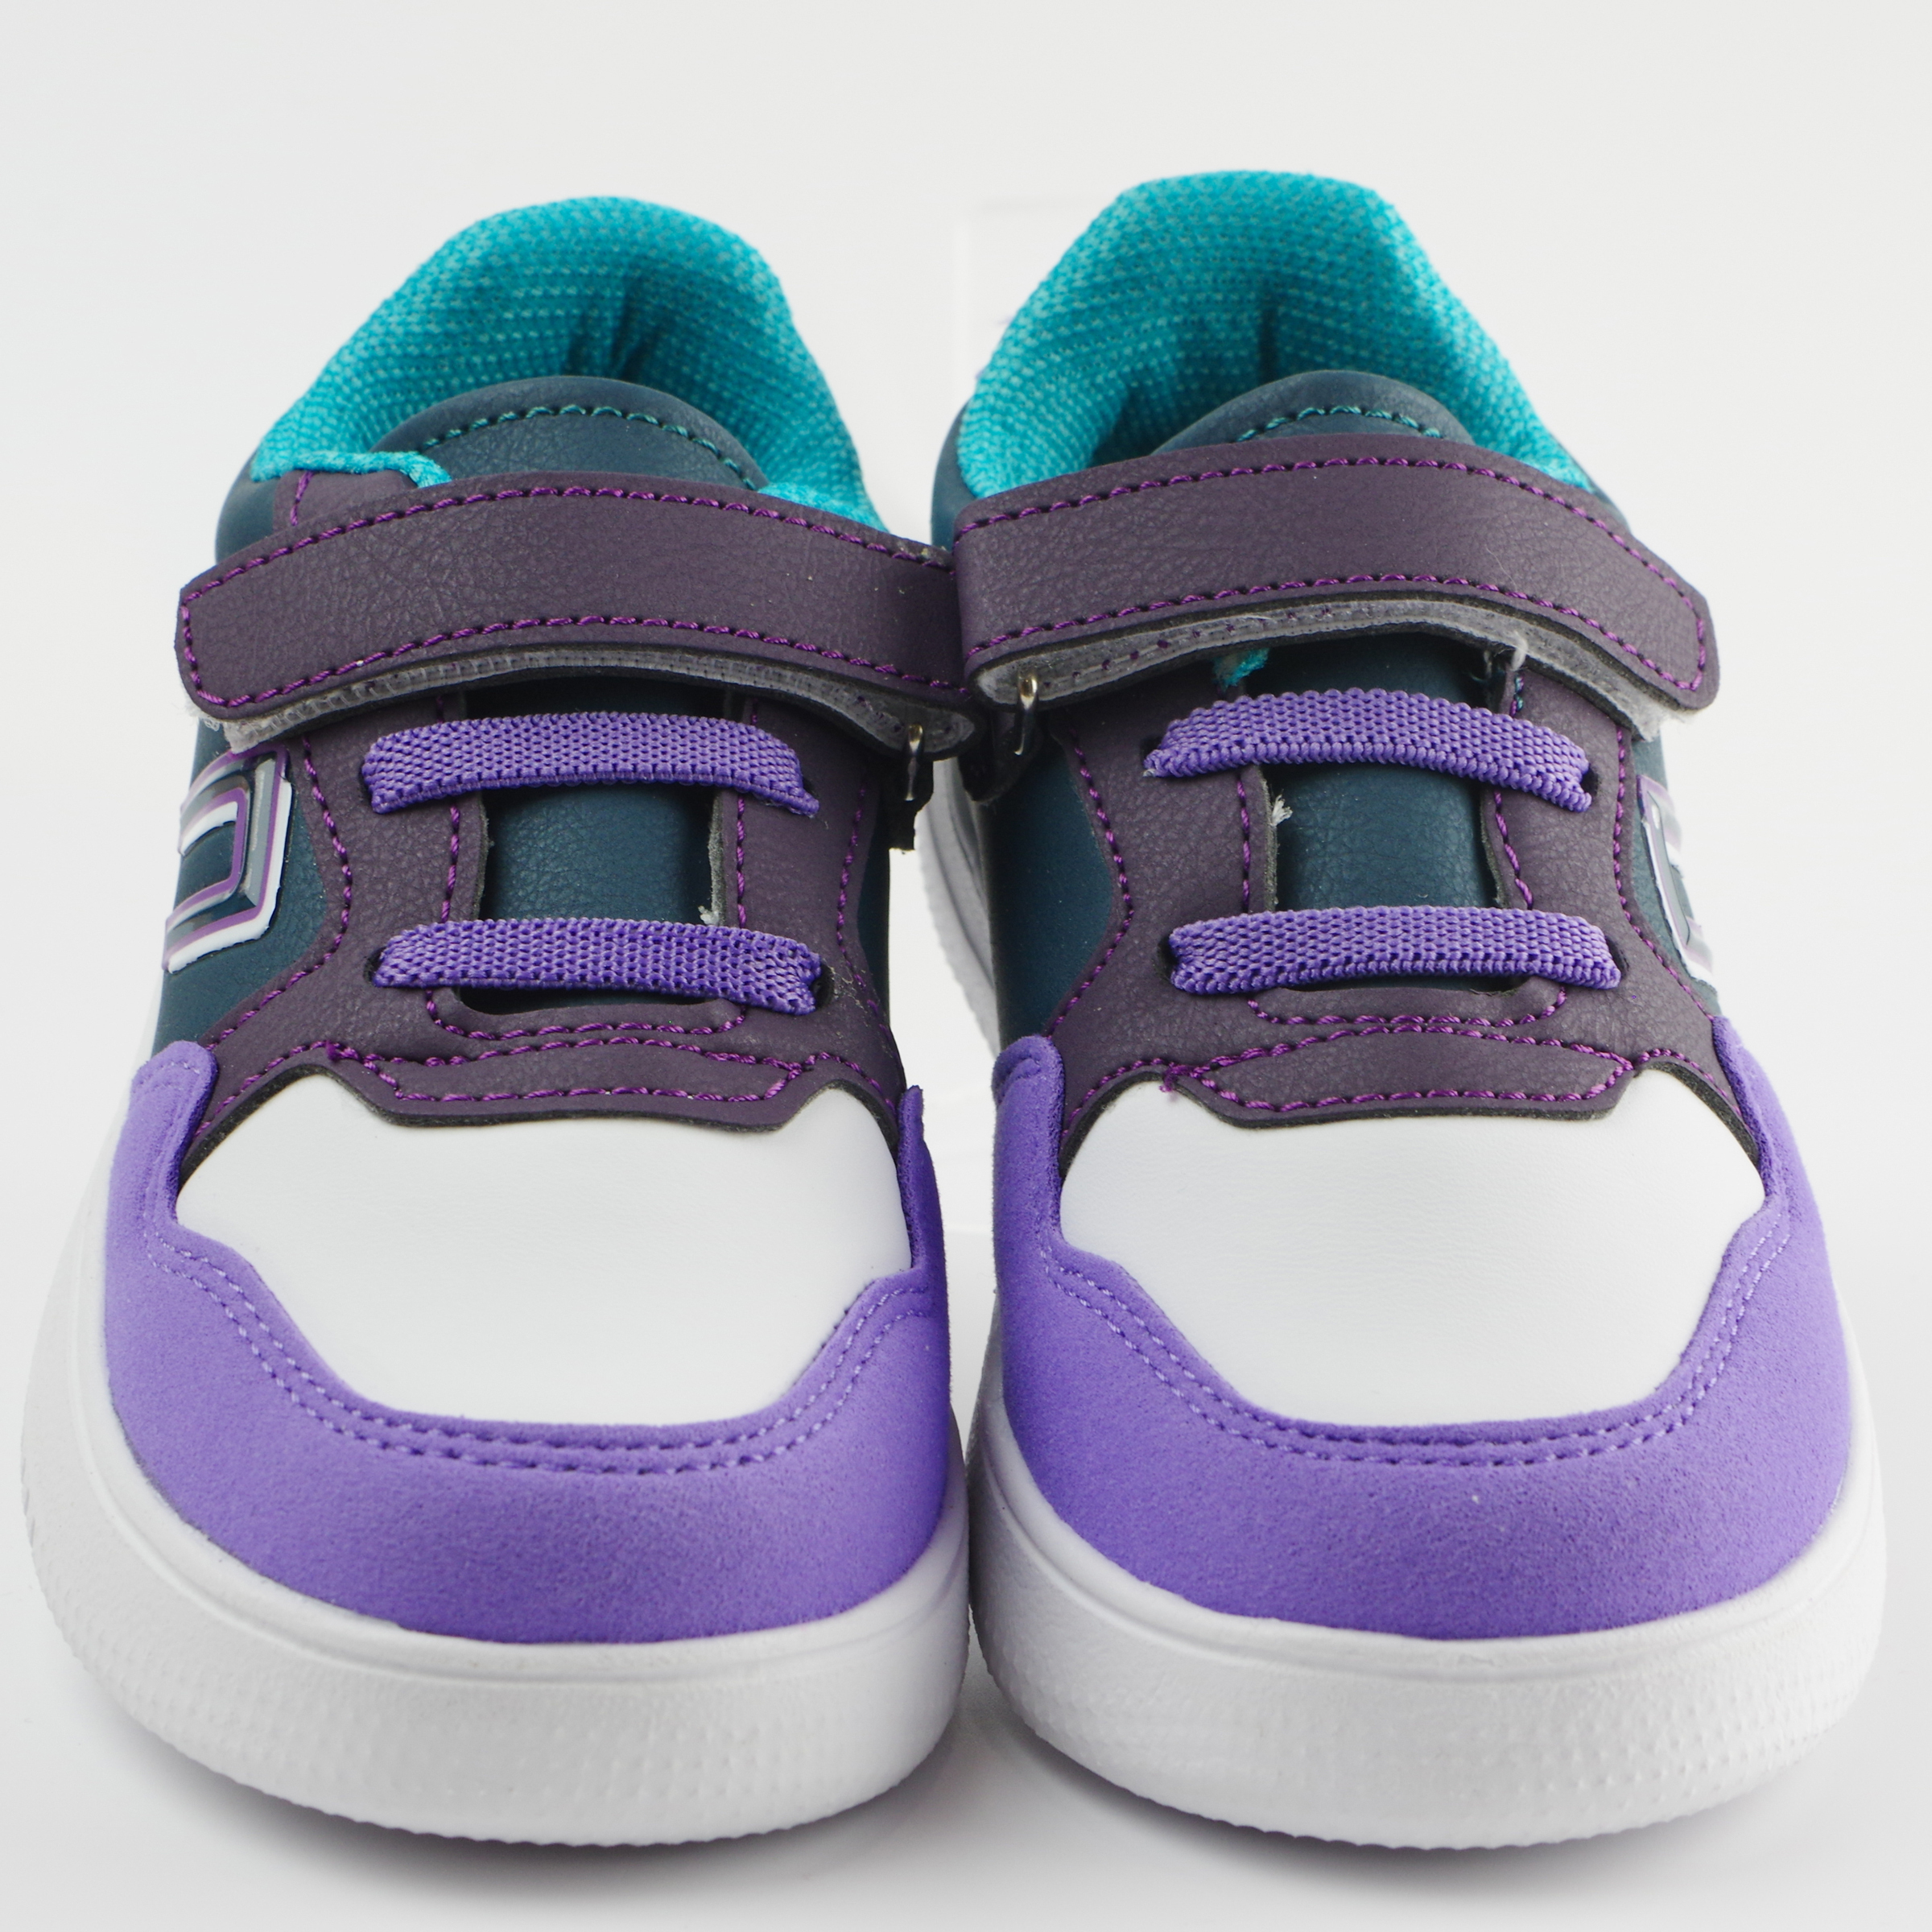 Кроссовки детские (2109) материал Искусственная кожа, цвет Фиолетовый  для девочки 26-30 размеры – Sole Kids. Фото 3